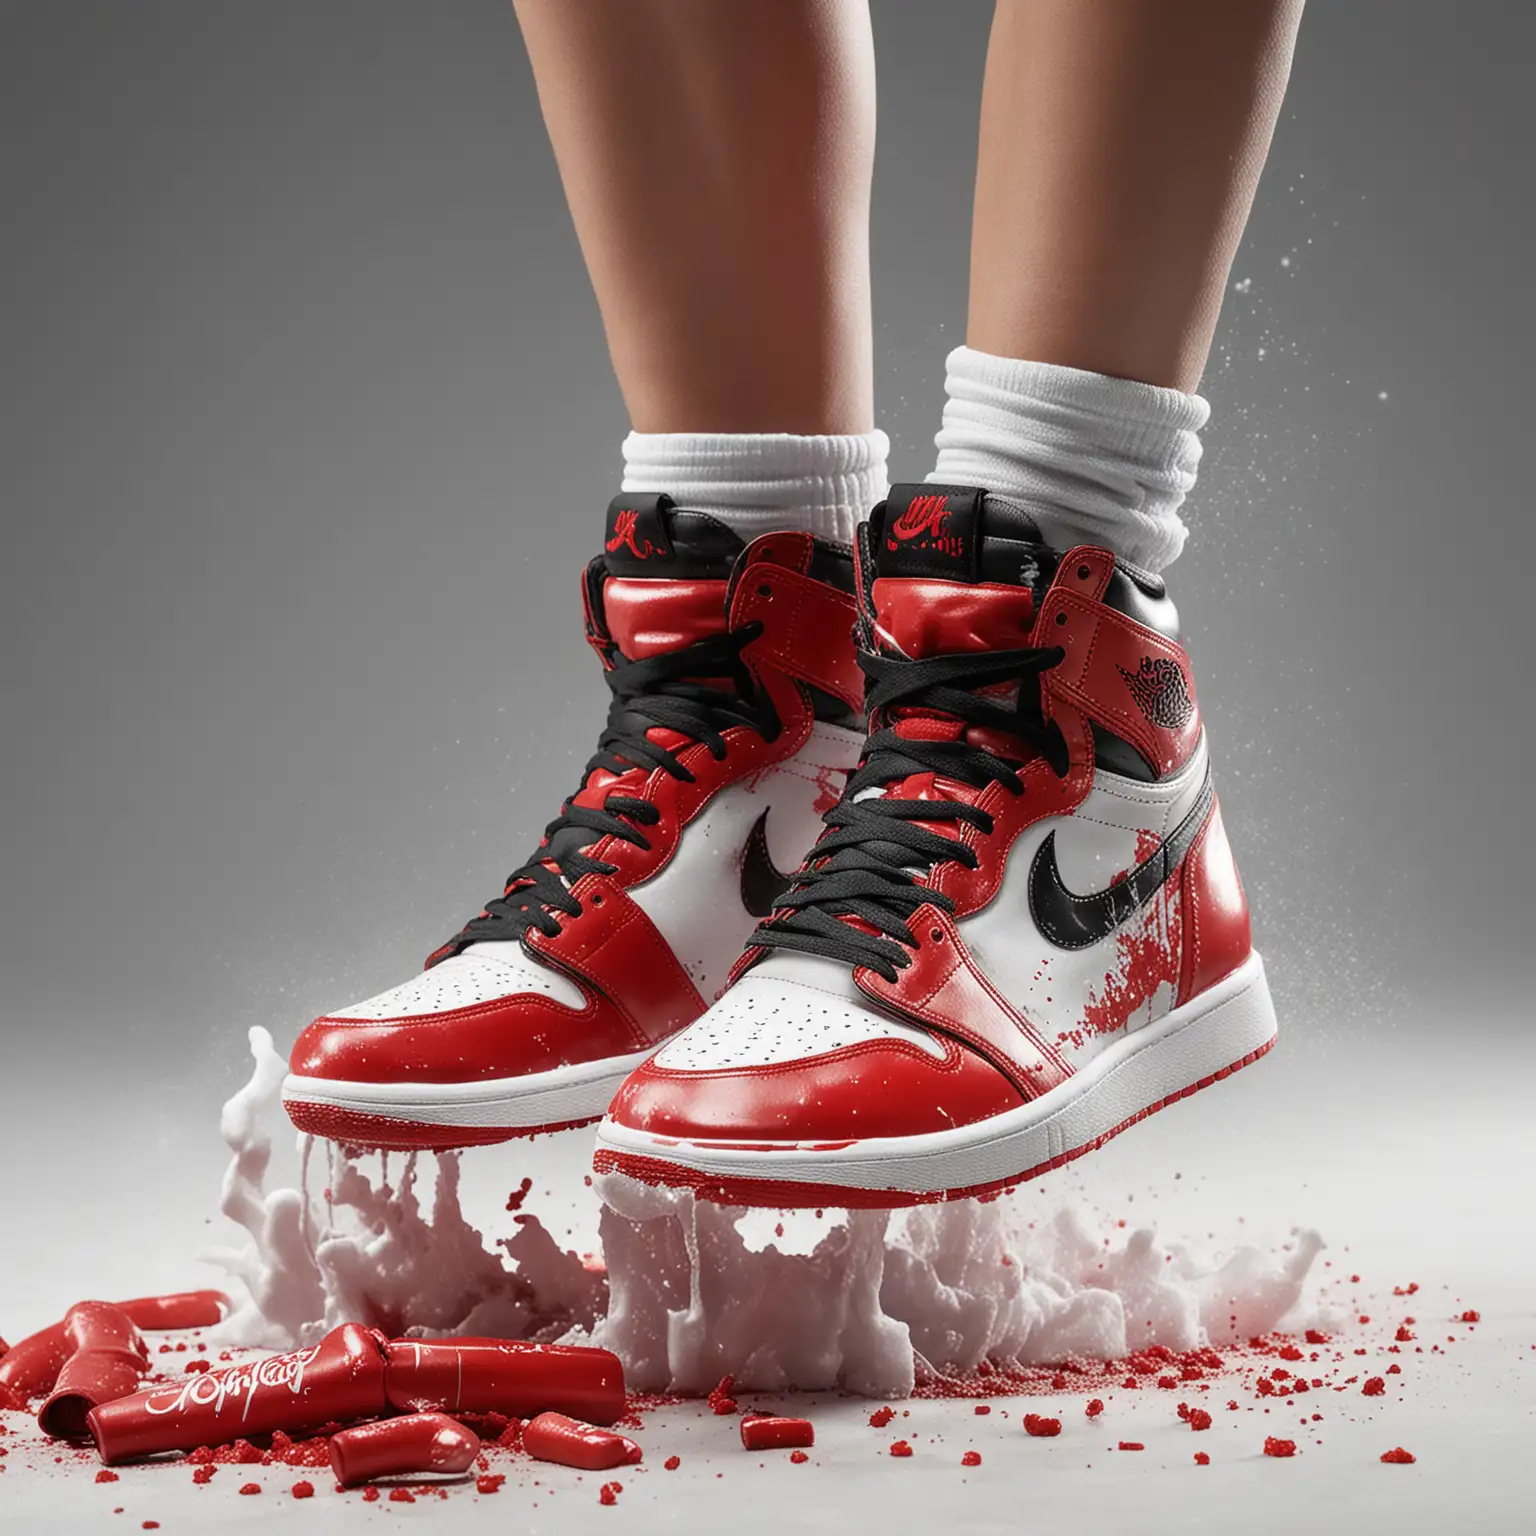 Asian-Girl-Wearing-Air-Jordan-1-OG-High-Shoes-Stomping-on-Coke